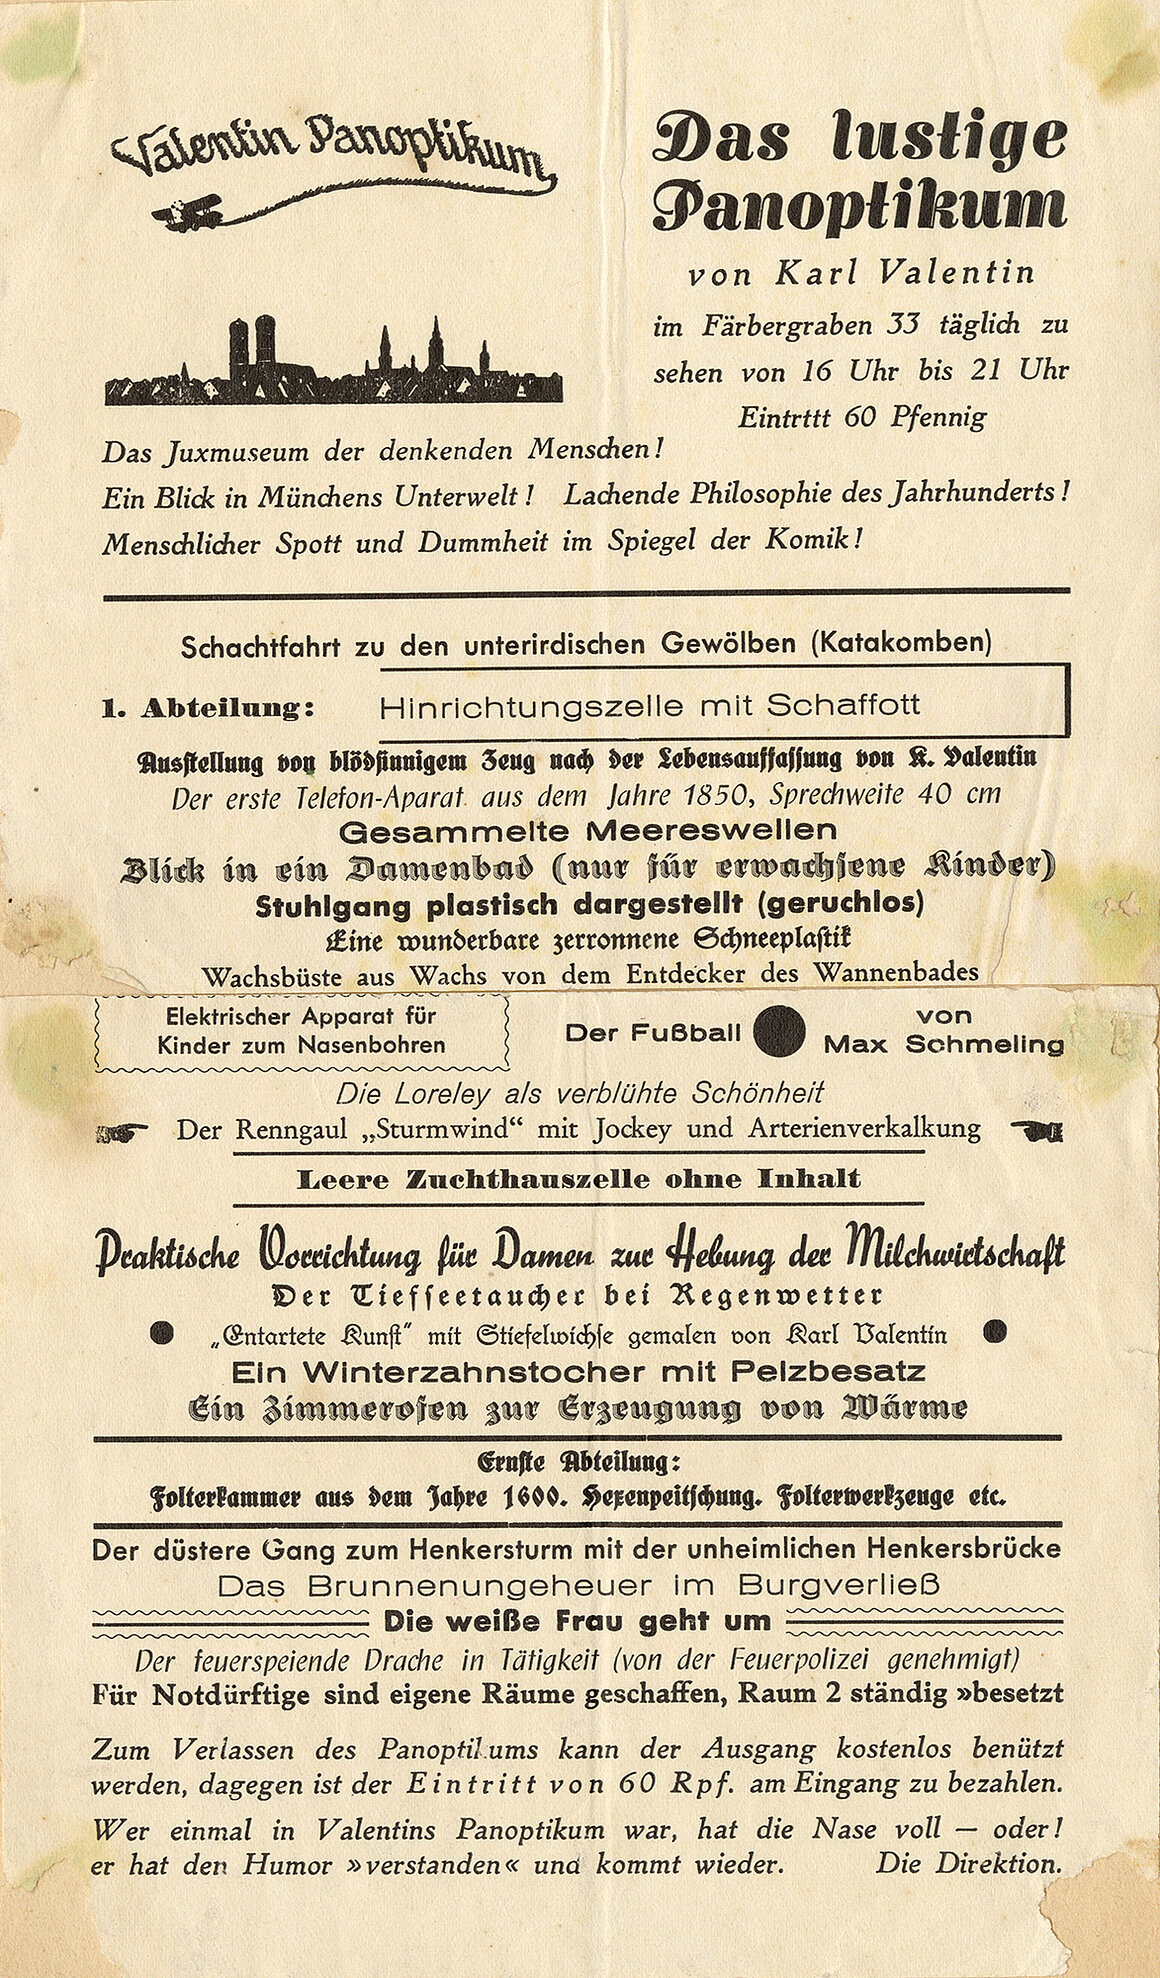 Karl Valentin, Karl Valentin, Karl Valentin, Werbeblatt für das Panoptikum im Färbergraben 33, Ritterspelunke, 1937